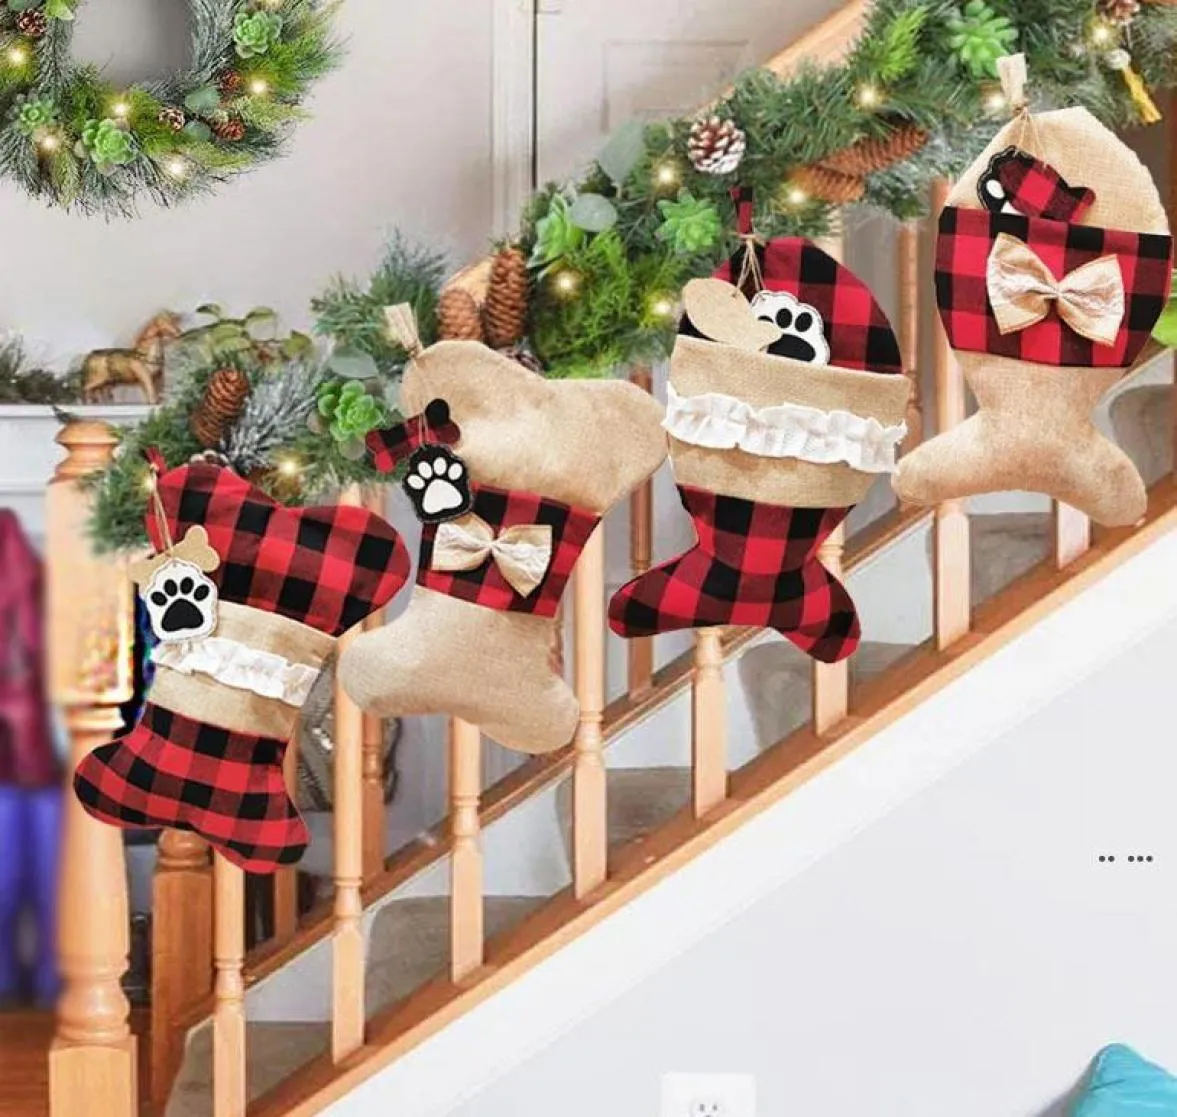 かわいい魚の骨の形状靴下クリスマスストッキングキッズギフトバッグキャンディーバッグクリスマスツリーオーナメントホームパーティー装飾プロップソックス3366555